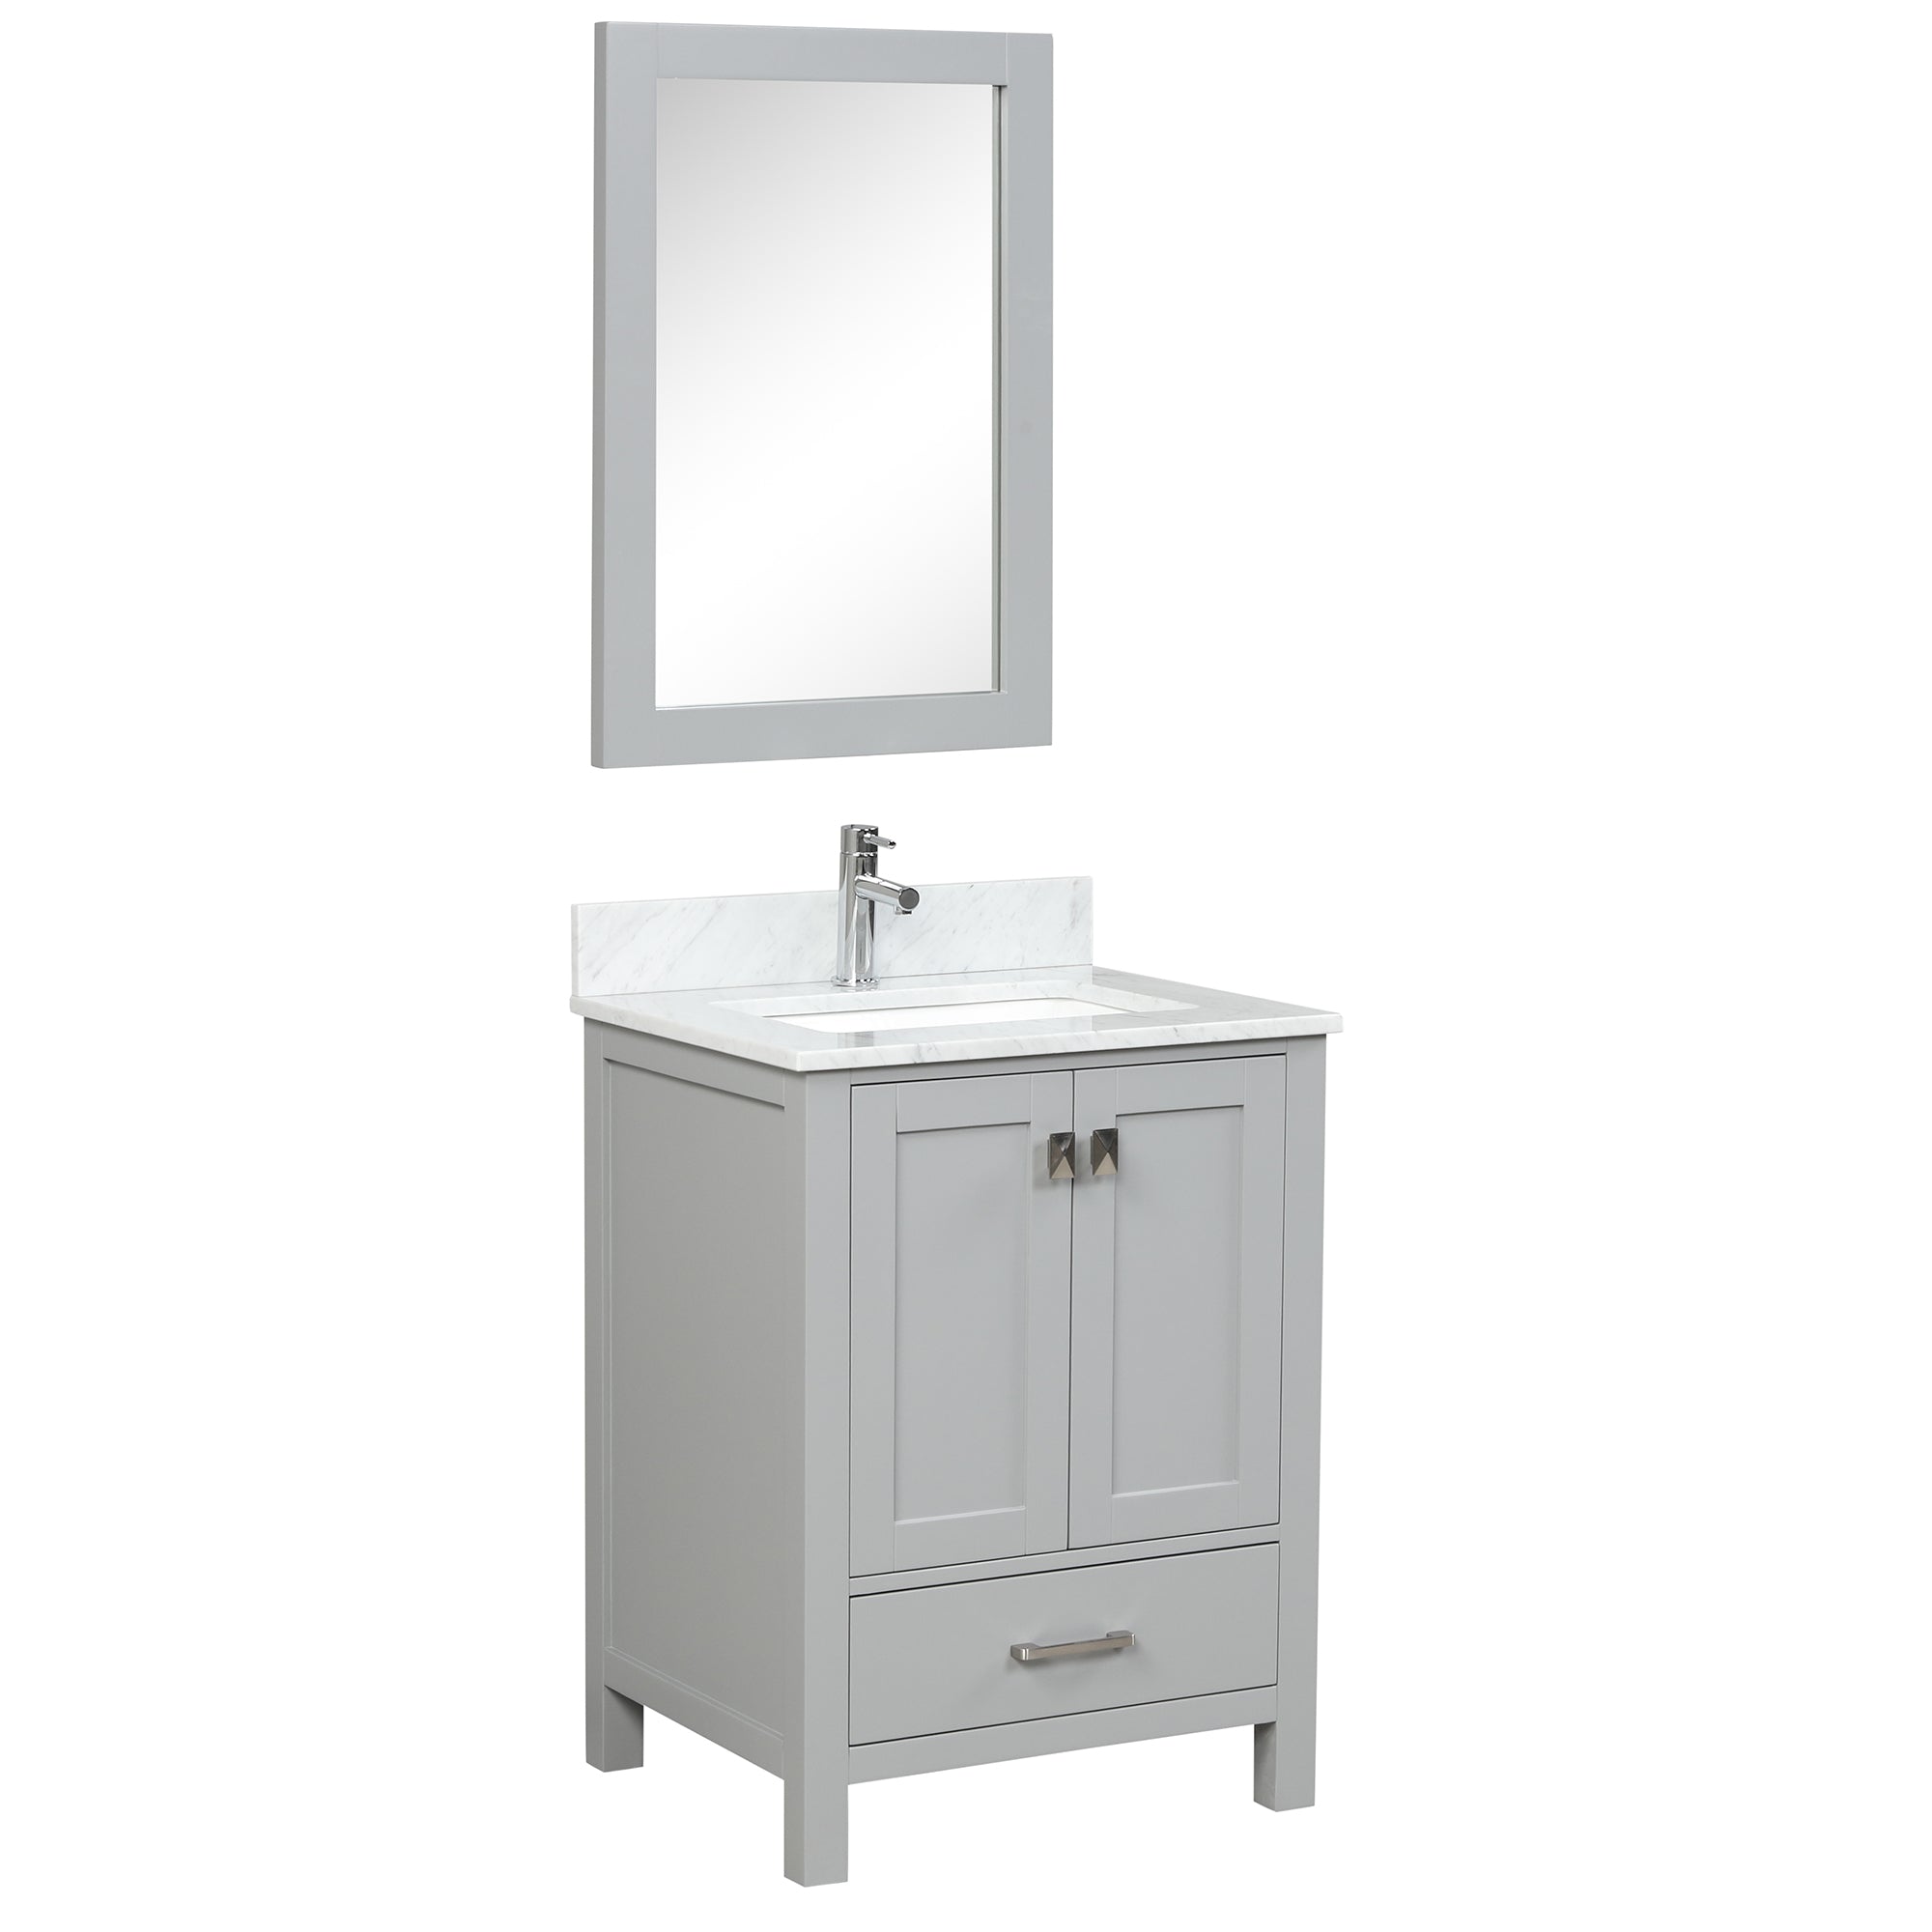 Geneva 24" Grey Bathroom Vanity with Marble Sink - Contemporary Bathroom Vanity